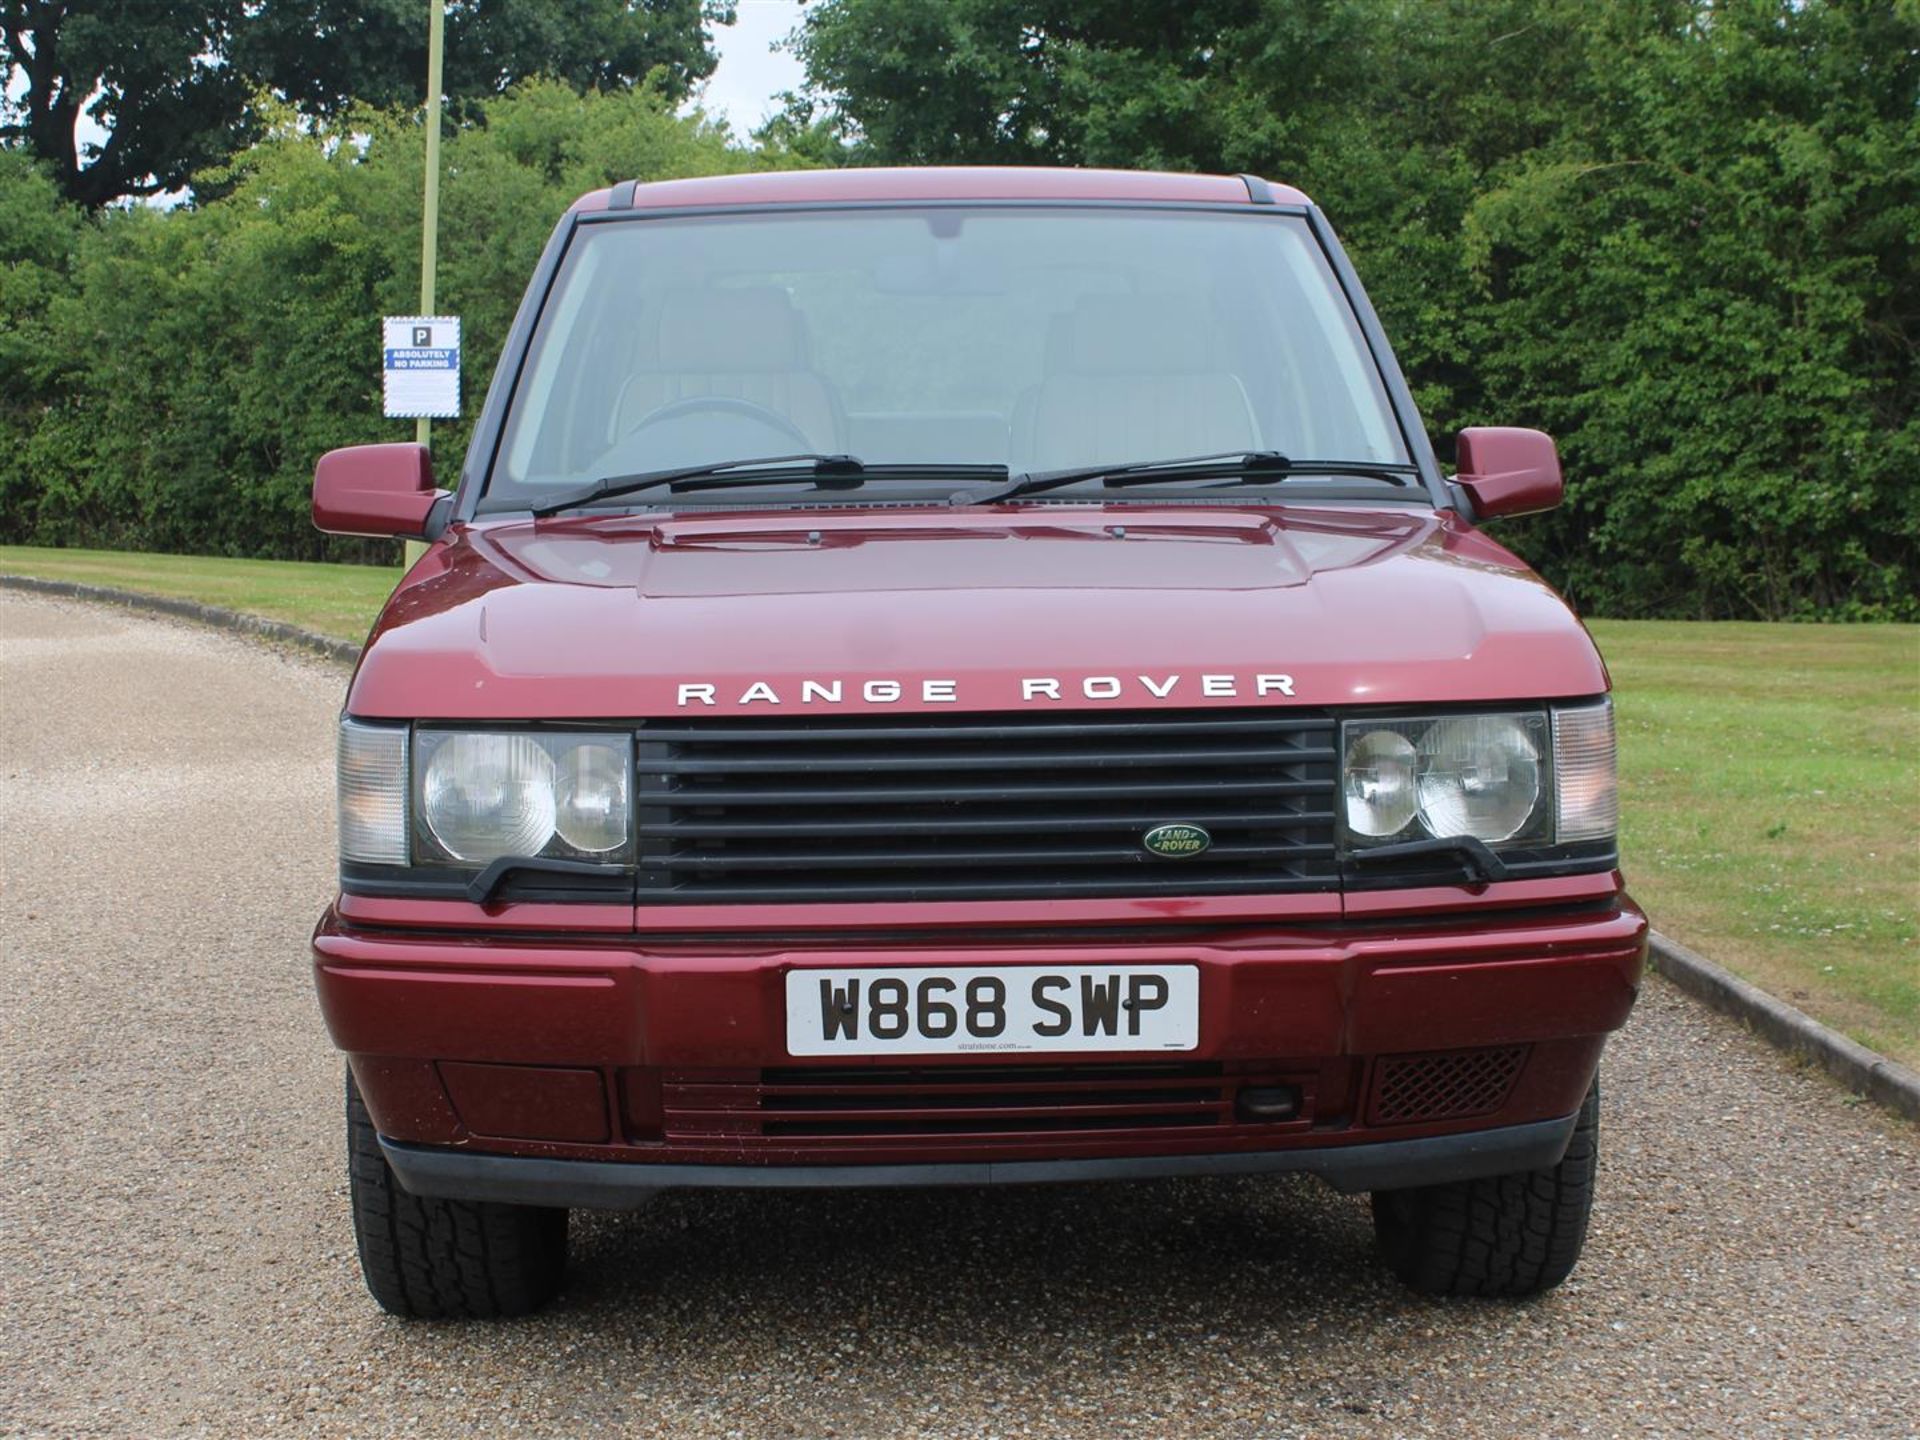 2000 Range Rover 2.5 DSE Auto - Image 2 of 26